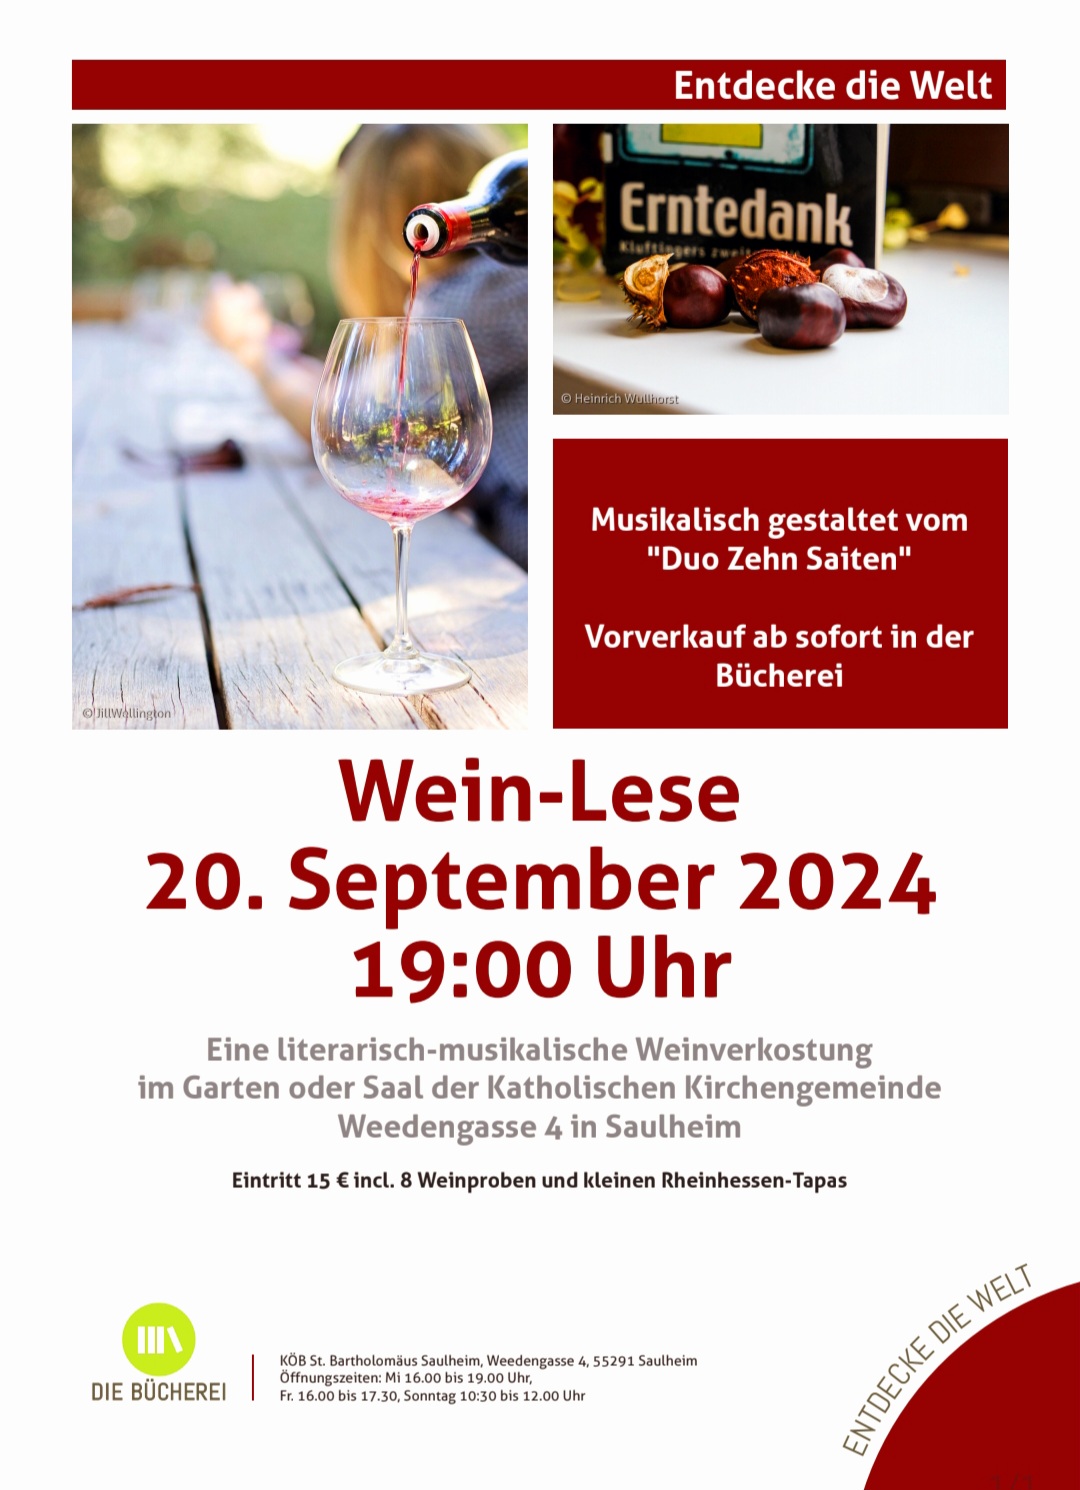 Wein-Lese in Saulheim